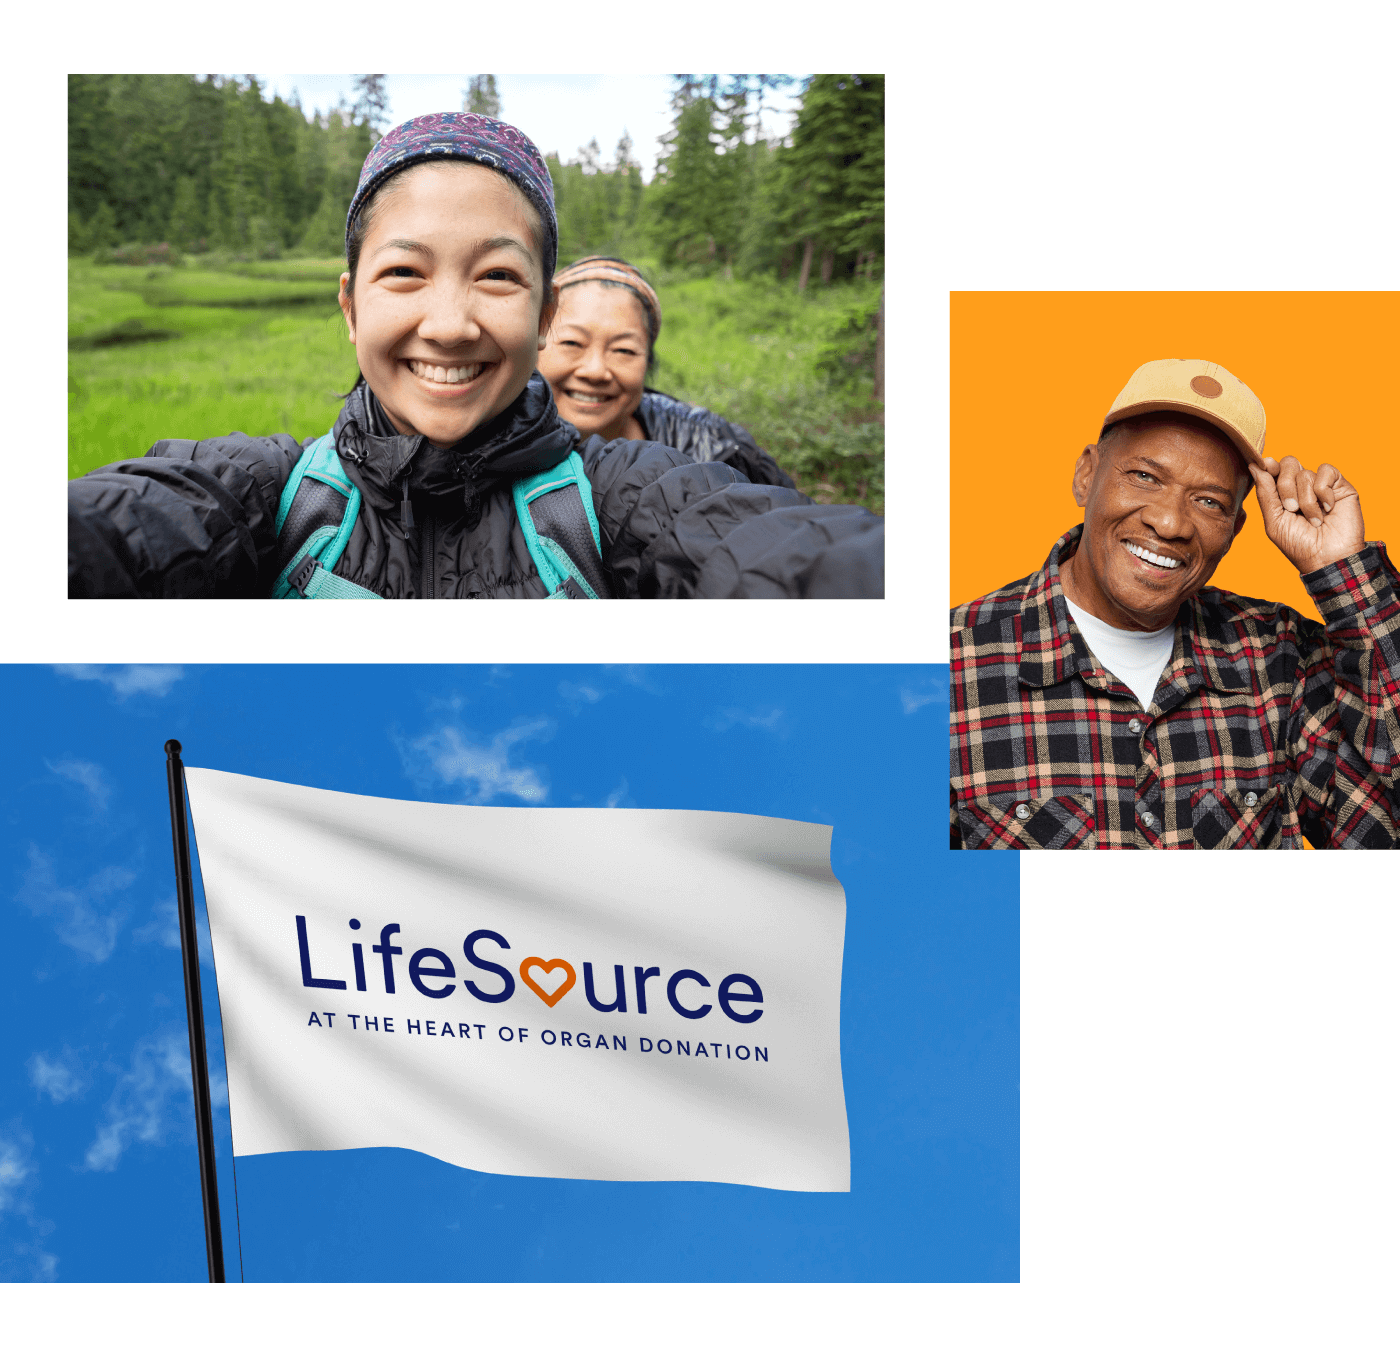 imágenes de madre e hija tomándose un selfie mientras hacen senderismo, hombre sonriendo a la cámara mientras se quita el sombrero, LifeSource bandera ondeando al viento.